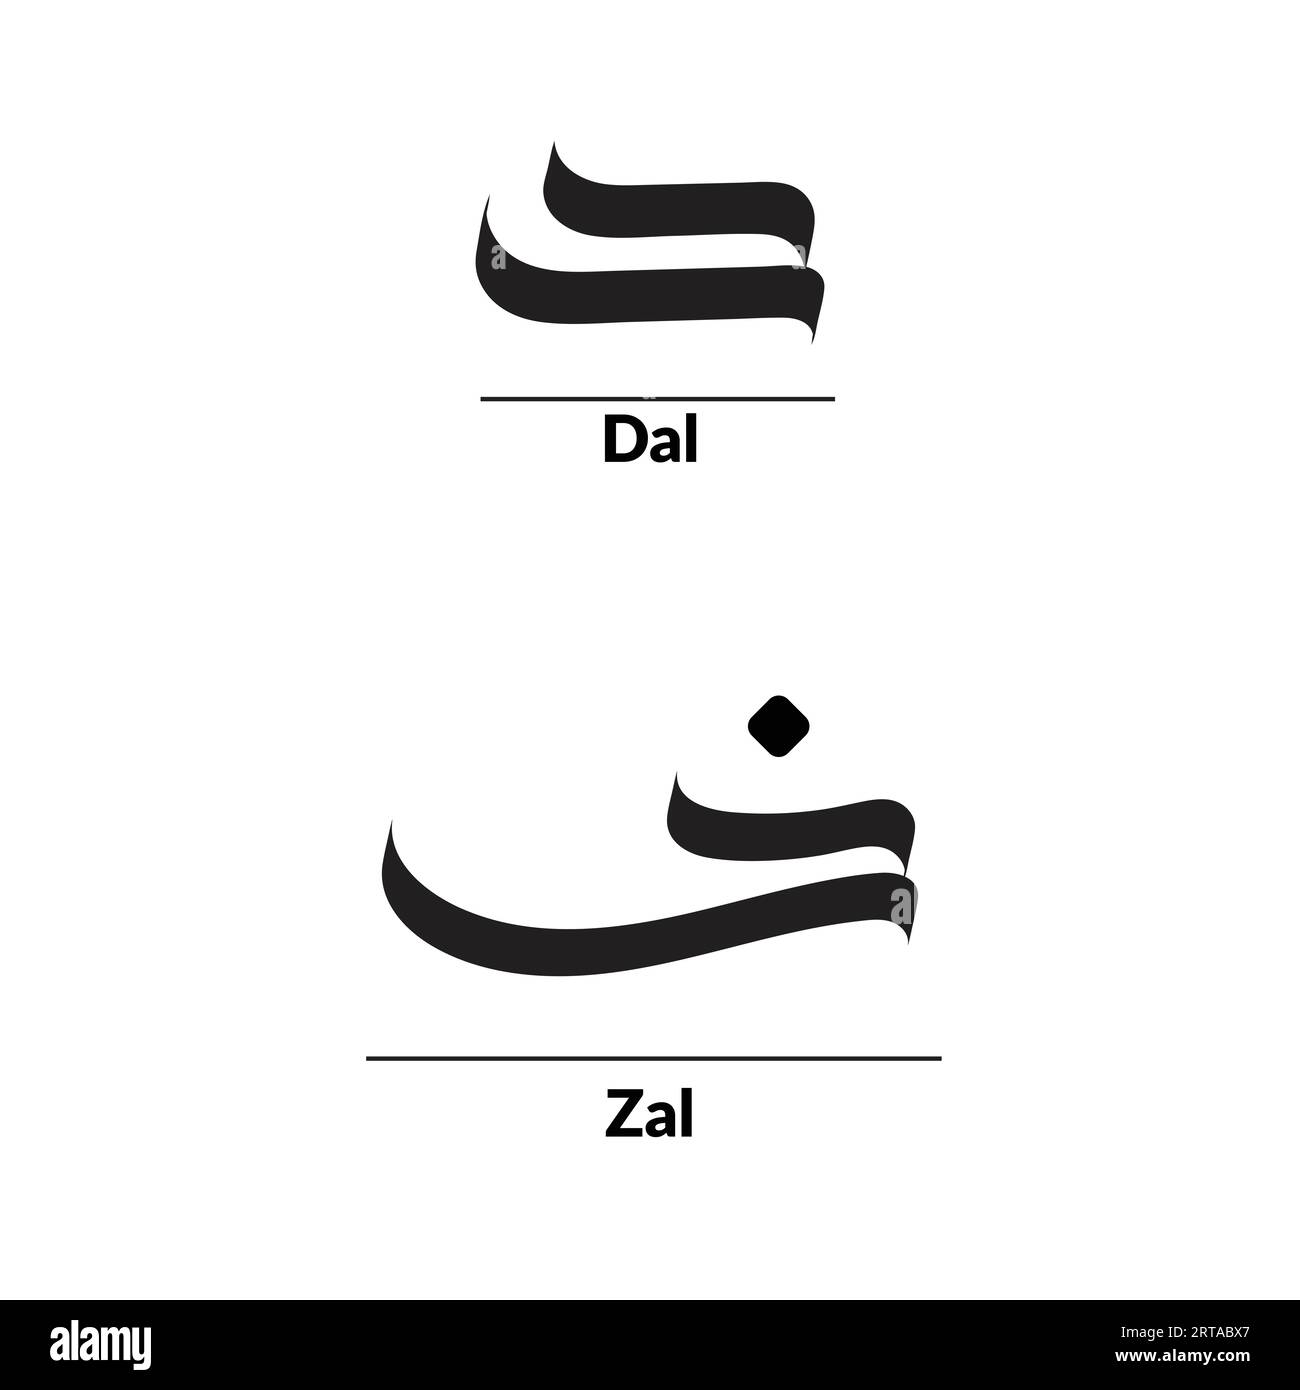 Arabische Kalligraphie im Al-Saif-Stil, Alphabet Daal und Zal. Stock Vektor